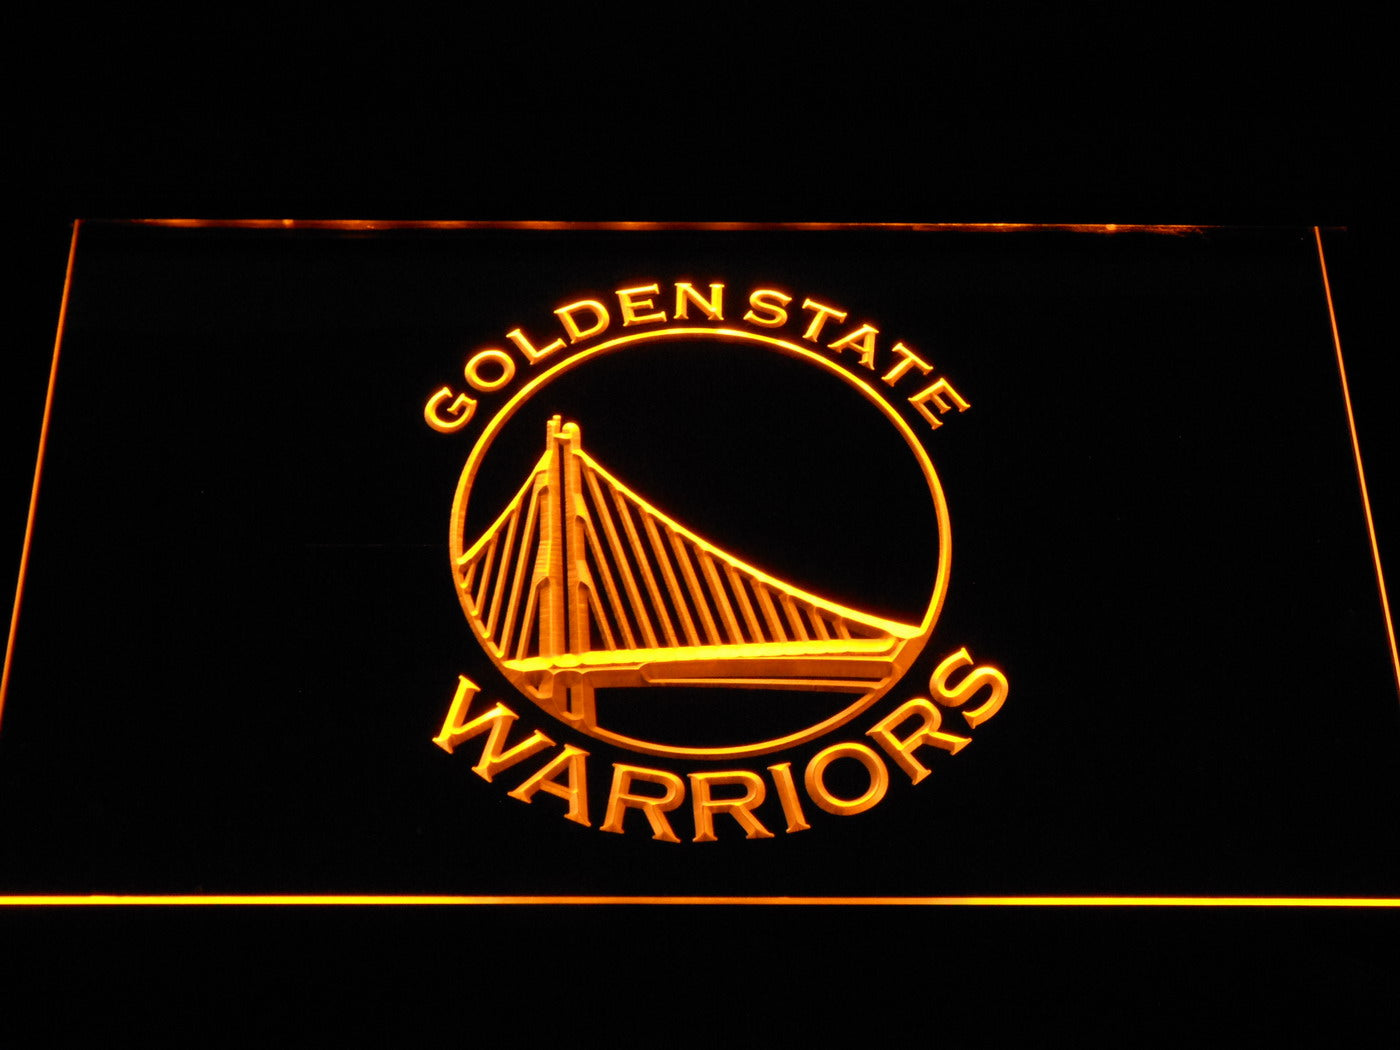 Golden State Warriors Neon Light LED Sign